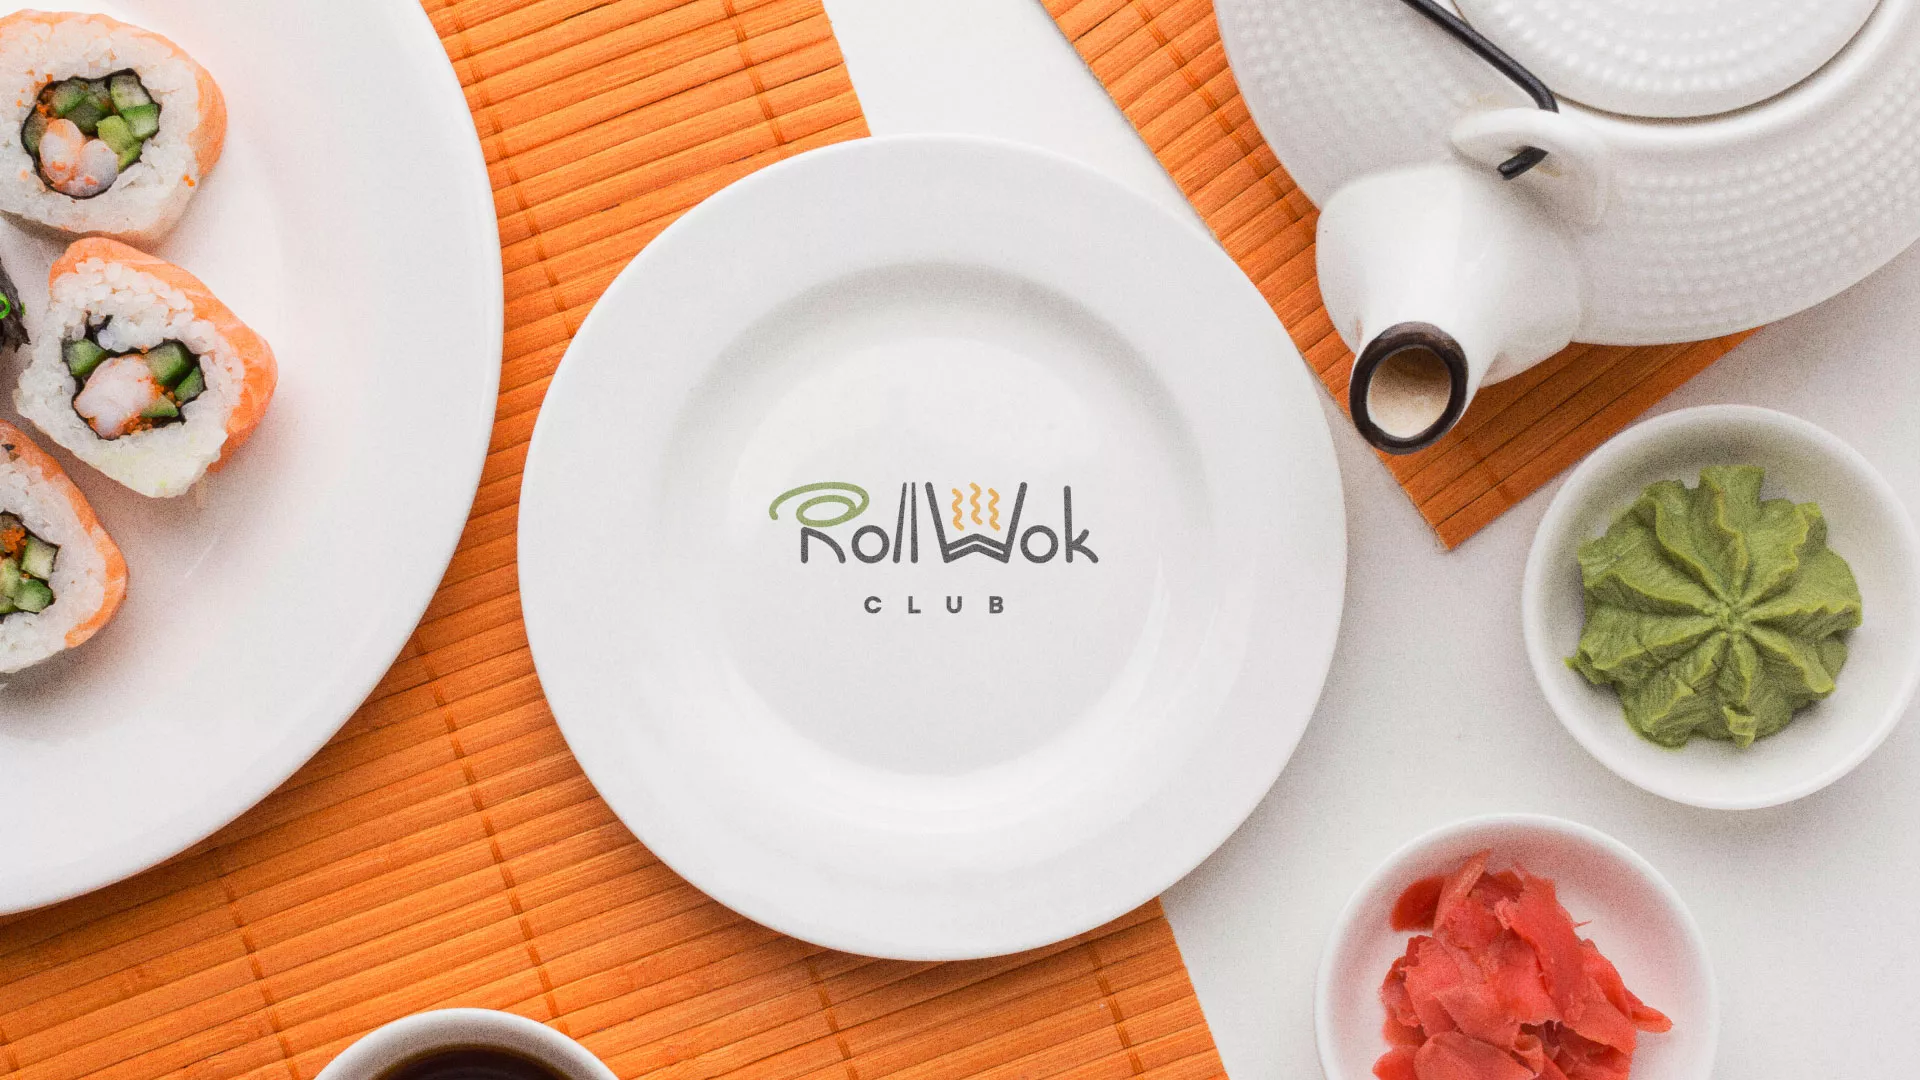 Разработка логотипа и фирменного стиля суши-бара «Roll Wok Club» в Слюдянке